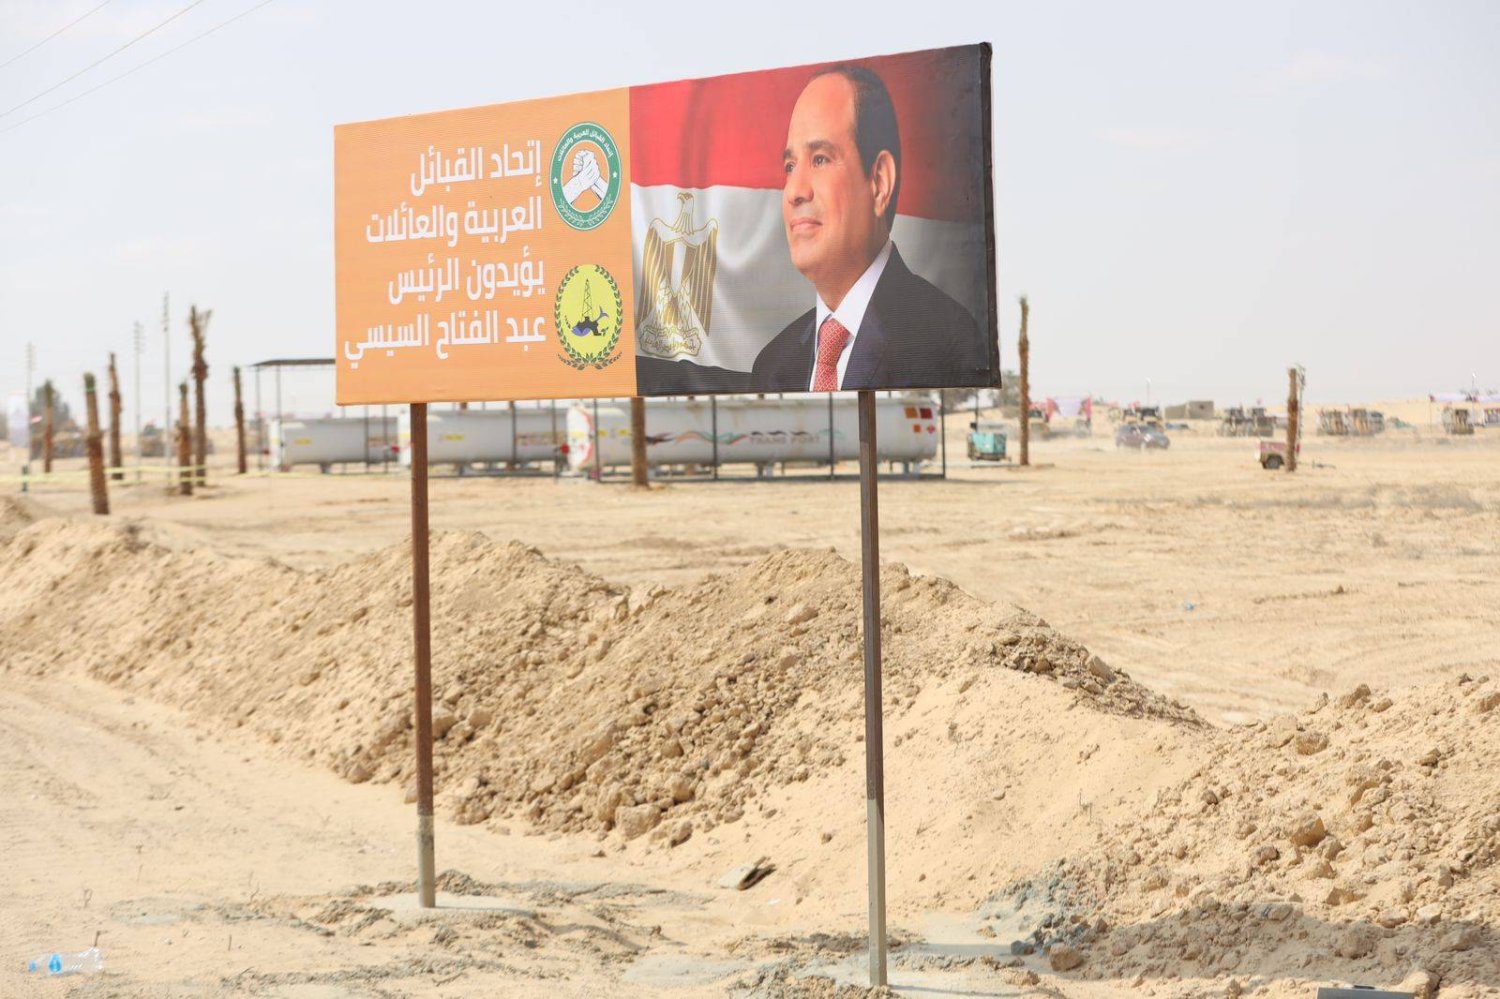 الإعلان عن تدشين مدينة جديدة باسم السيسي في سيناء (عضو مجلس النواب مصطفى بكري - فيسبوك)